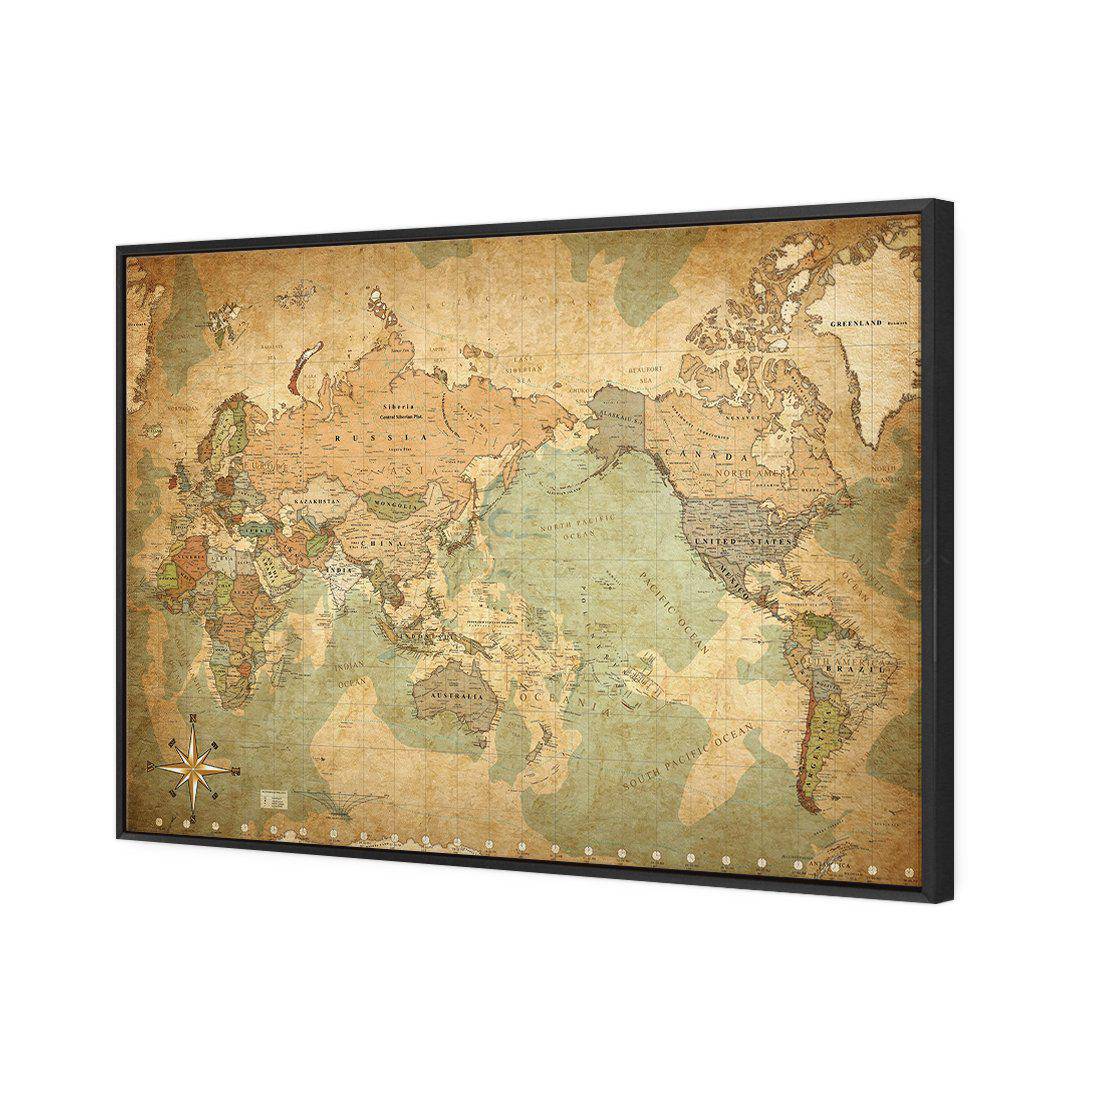 Antique World Map Canvas Art-Canvas-Wall Art Designs-45x30cm-Canvas - Black Frame-Wall Art Designs